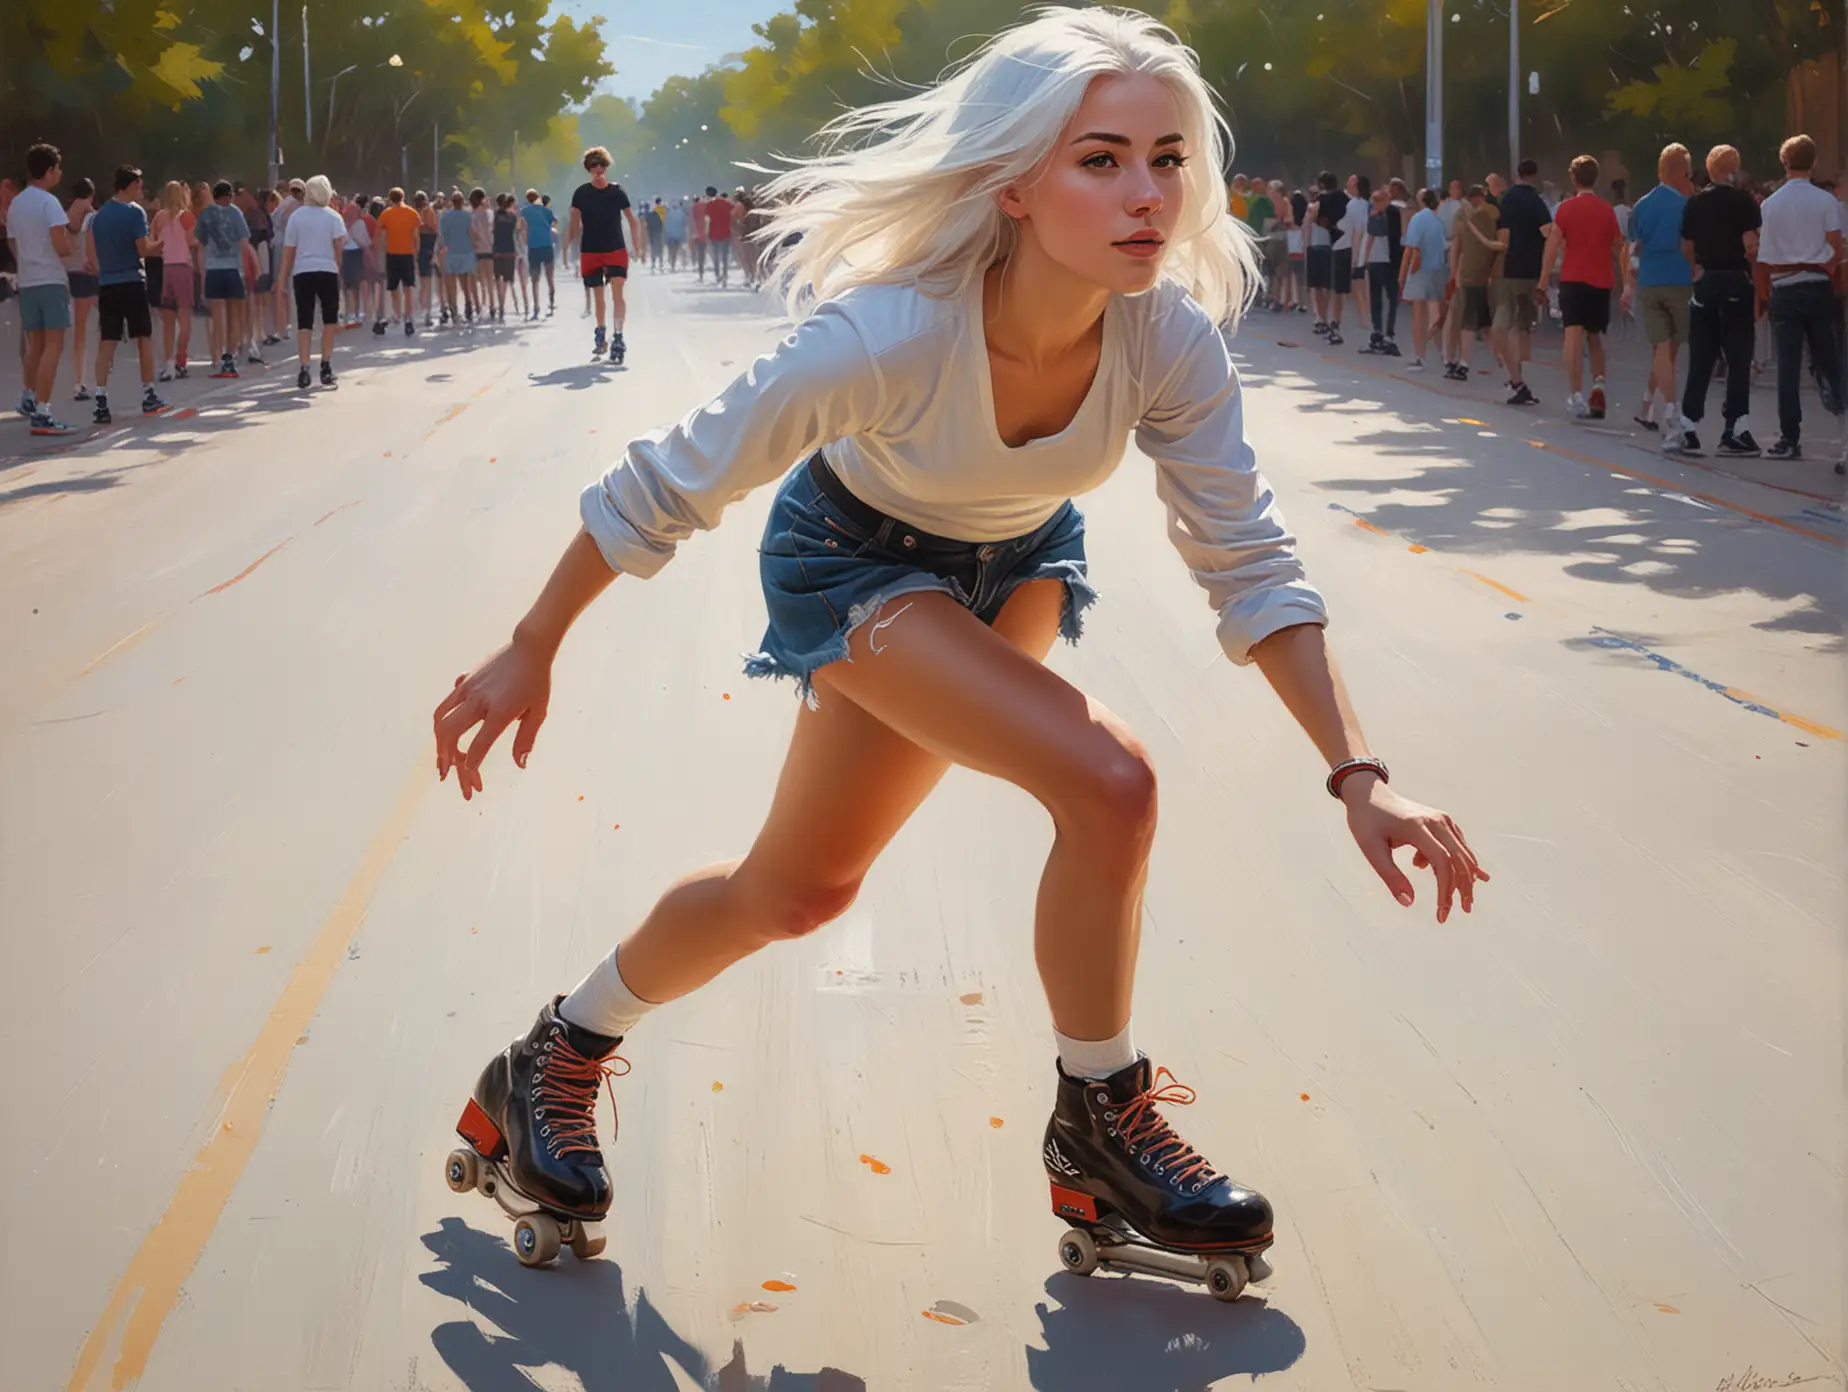 Energetic Roller Skating Girl in Greg Rutkowski Style Painting